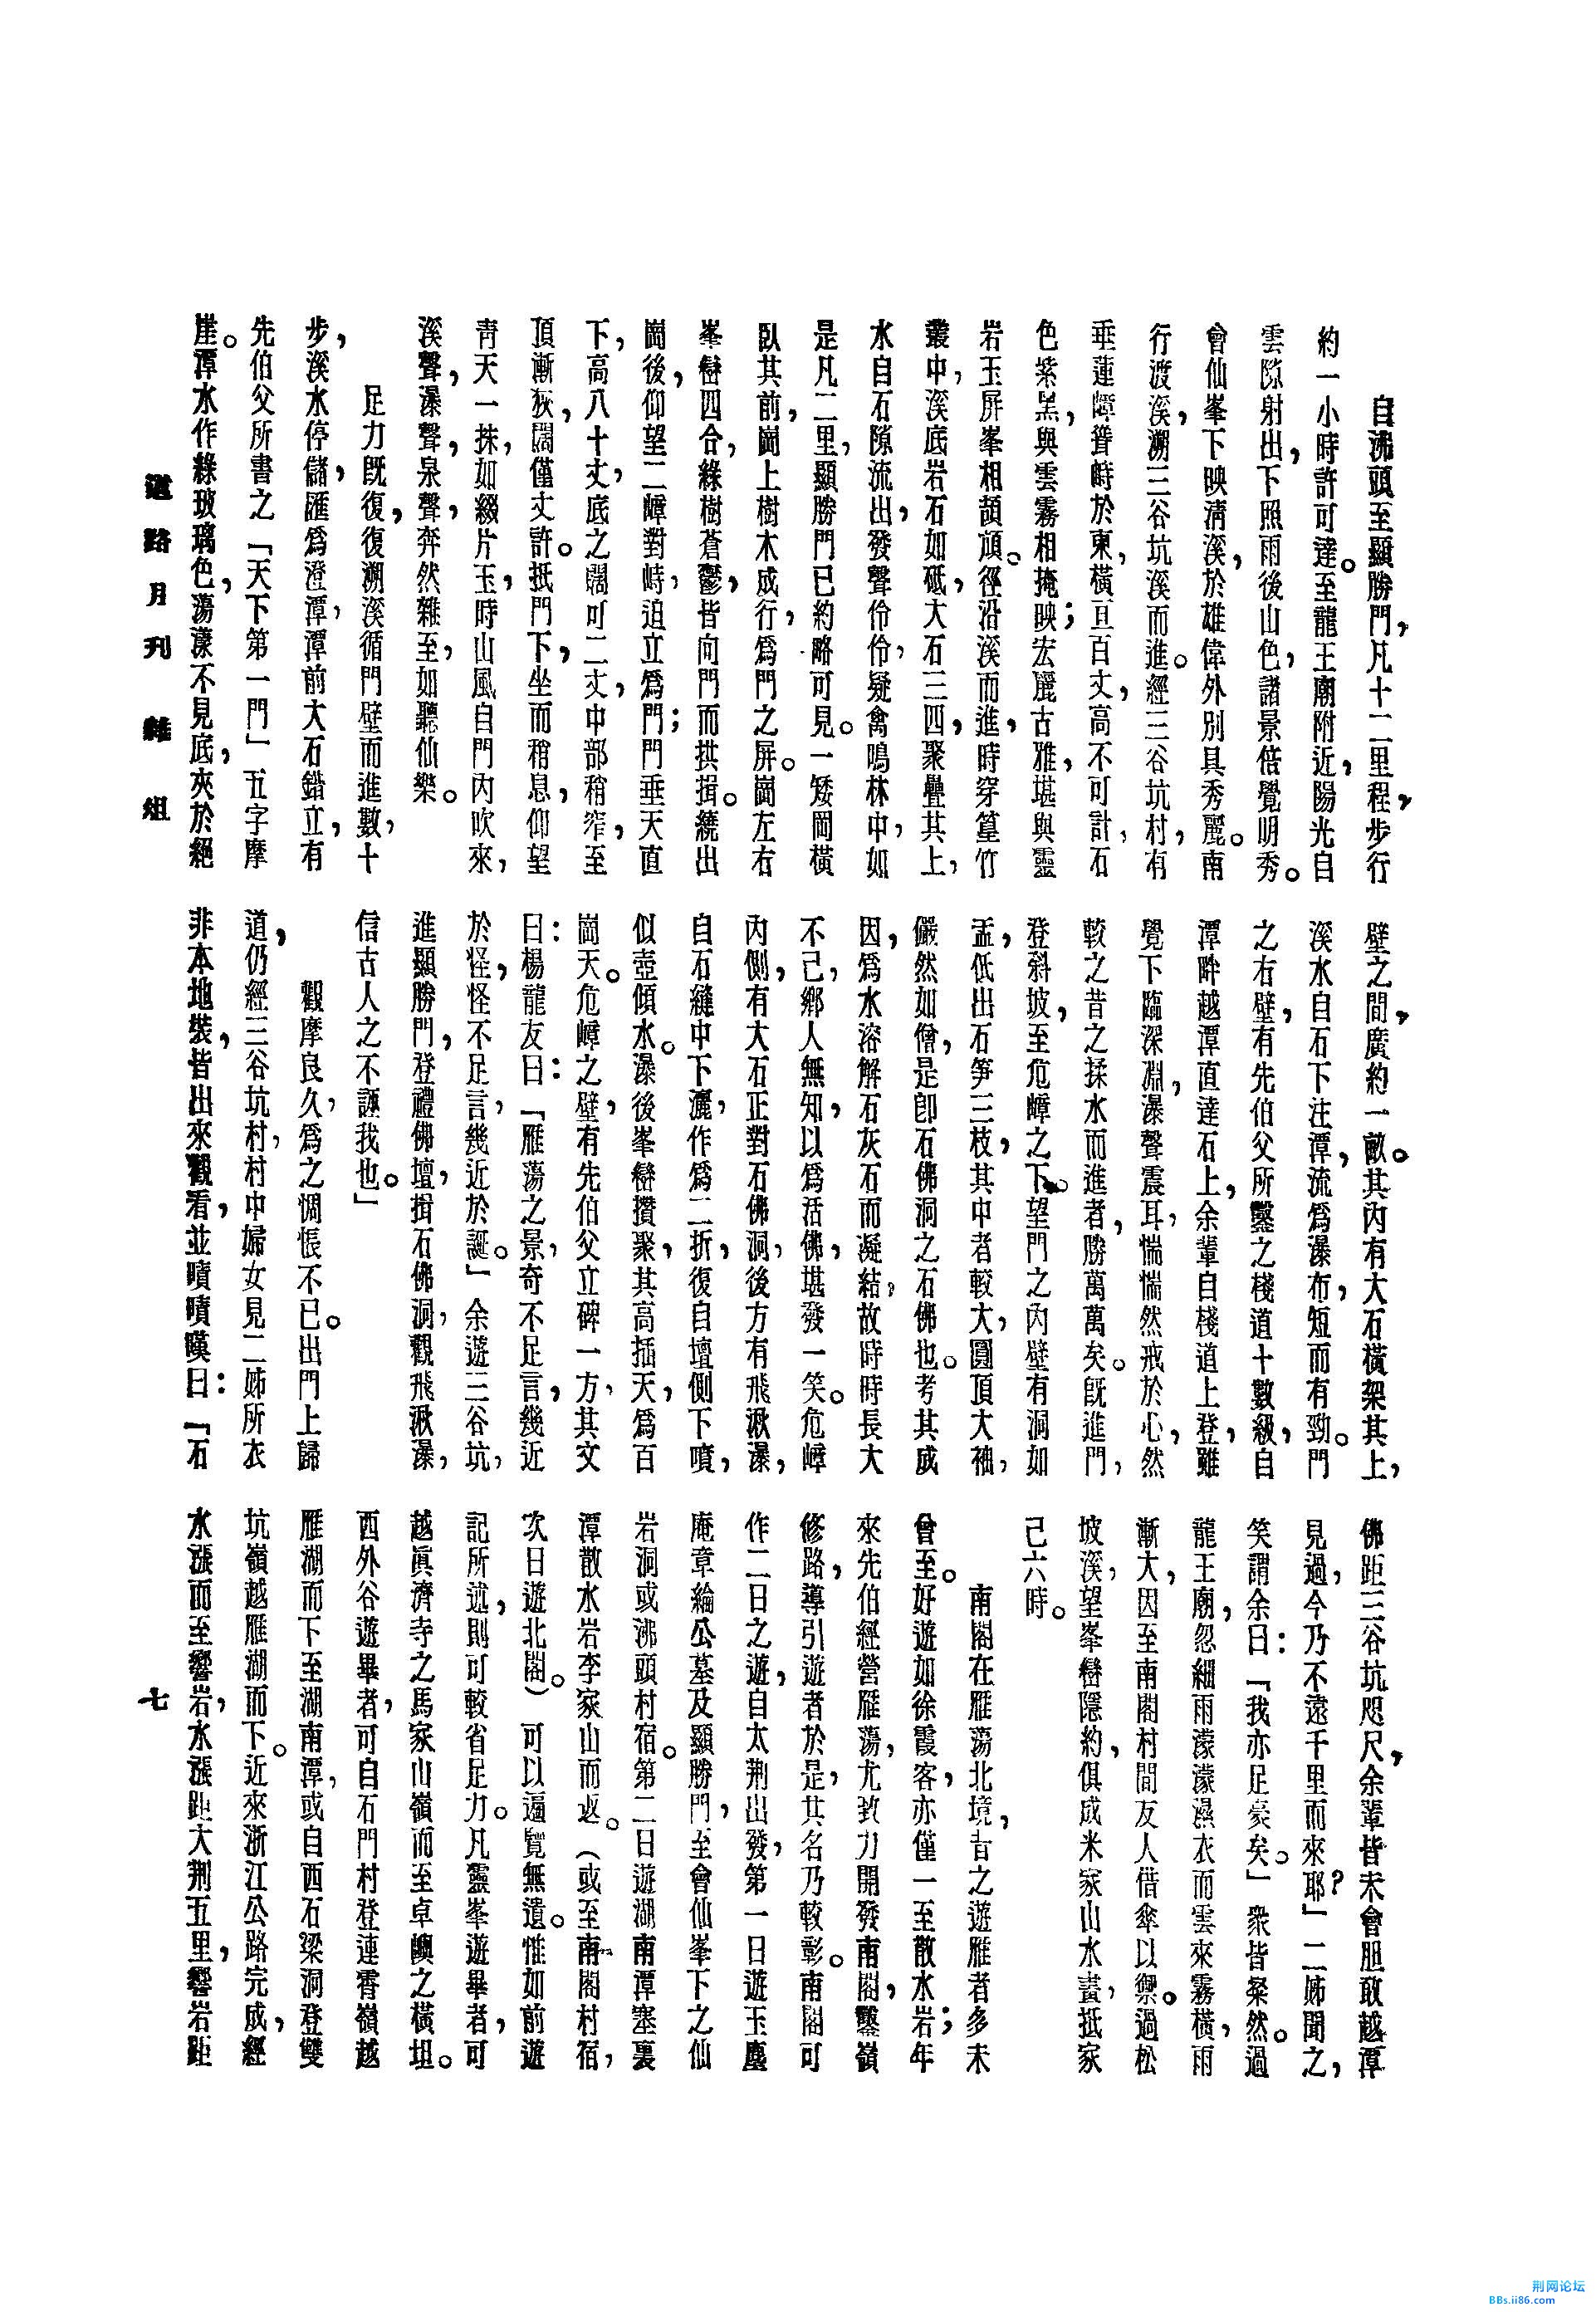 雁荡南阁探胜记[J].道路月刊,1936,(第1期)_页面_4.jpg